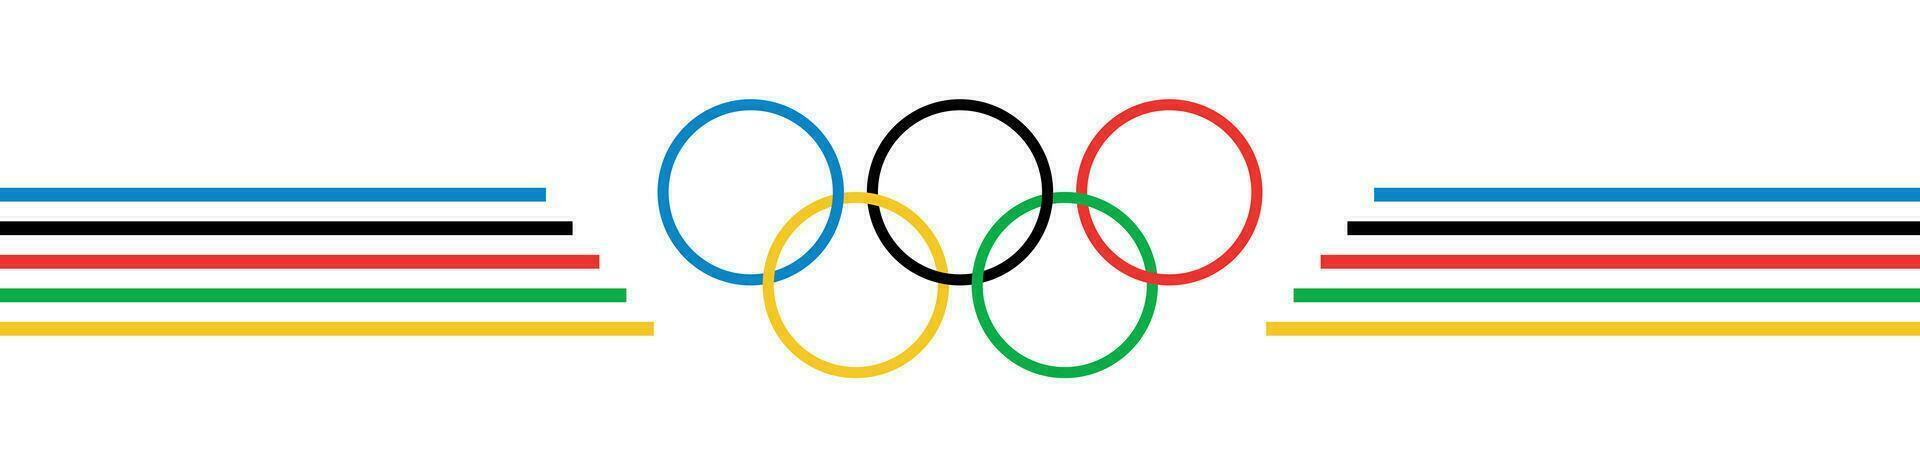 Juegos Olímpicos anillo logo aislado en blanco antecedentes. verano olímpico juegos. París 2024. encabezamiento para letras, sitios web, envío liza. olímpico juegos bandera vector